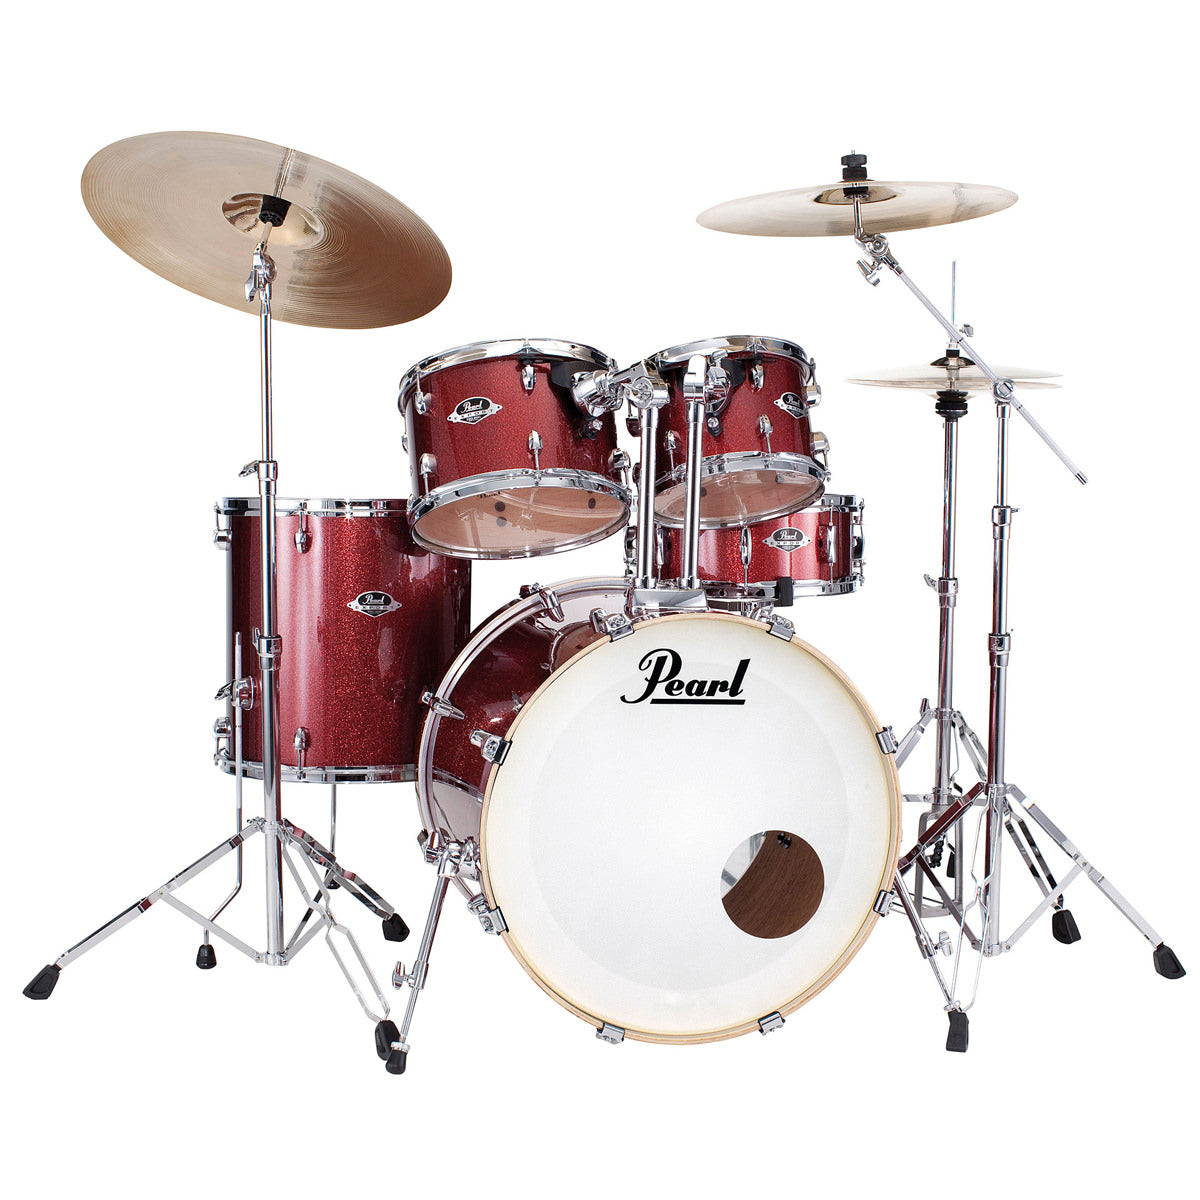 Pearl Export EXX Drum Kit - 22"BD, 10"RT, 12"RT, 16"FT & 14"SD - Black Cherry Glitter